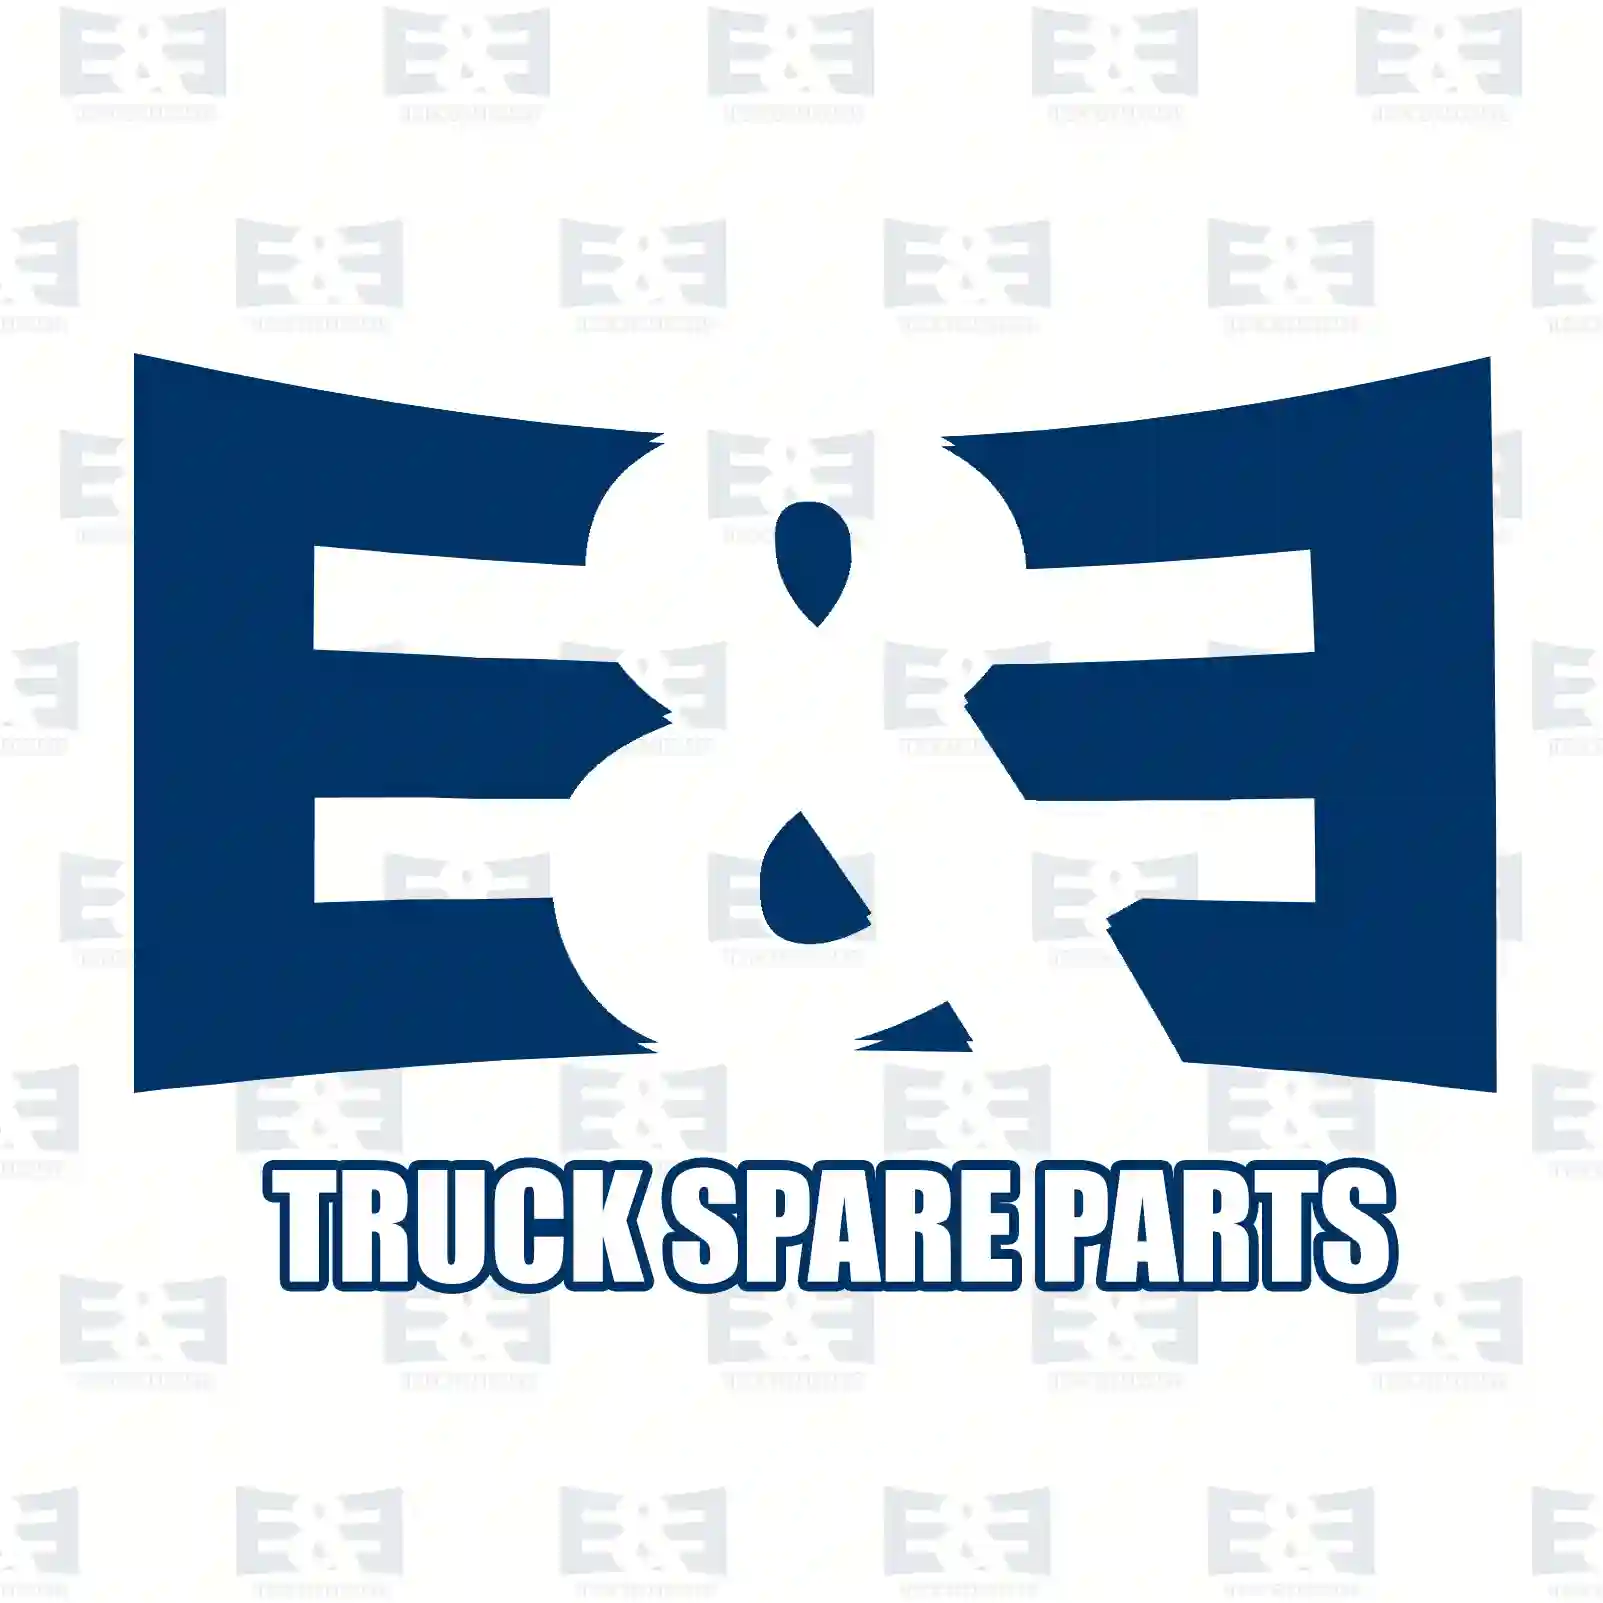 Exhaust brake, complete, 2E2209552, 42532610 ||  2E2209552 E&E Truck Spare Parts | Truck Spare Parts, Auotomotive Spare Parts Exhaust brake, complete, 2E2209552, 42532610 ||  2E2209552 E&E Truck Spare Parts | Truck Spare Parts, Auotomotive Spare Parts